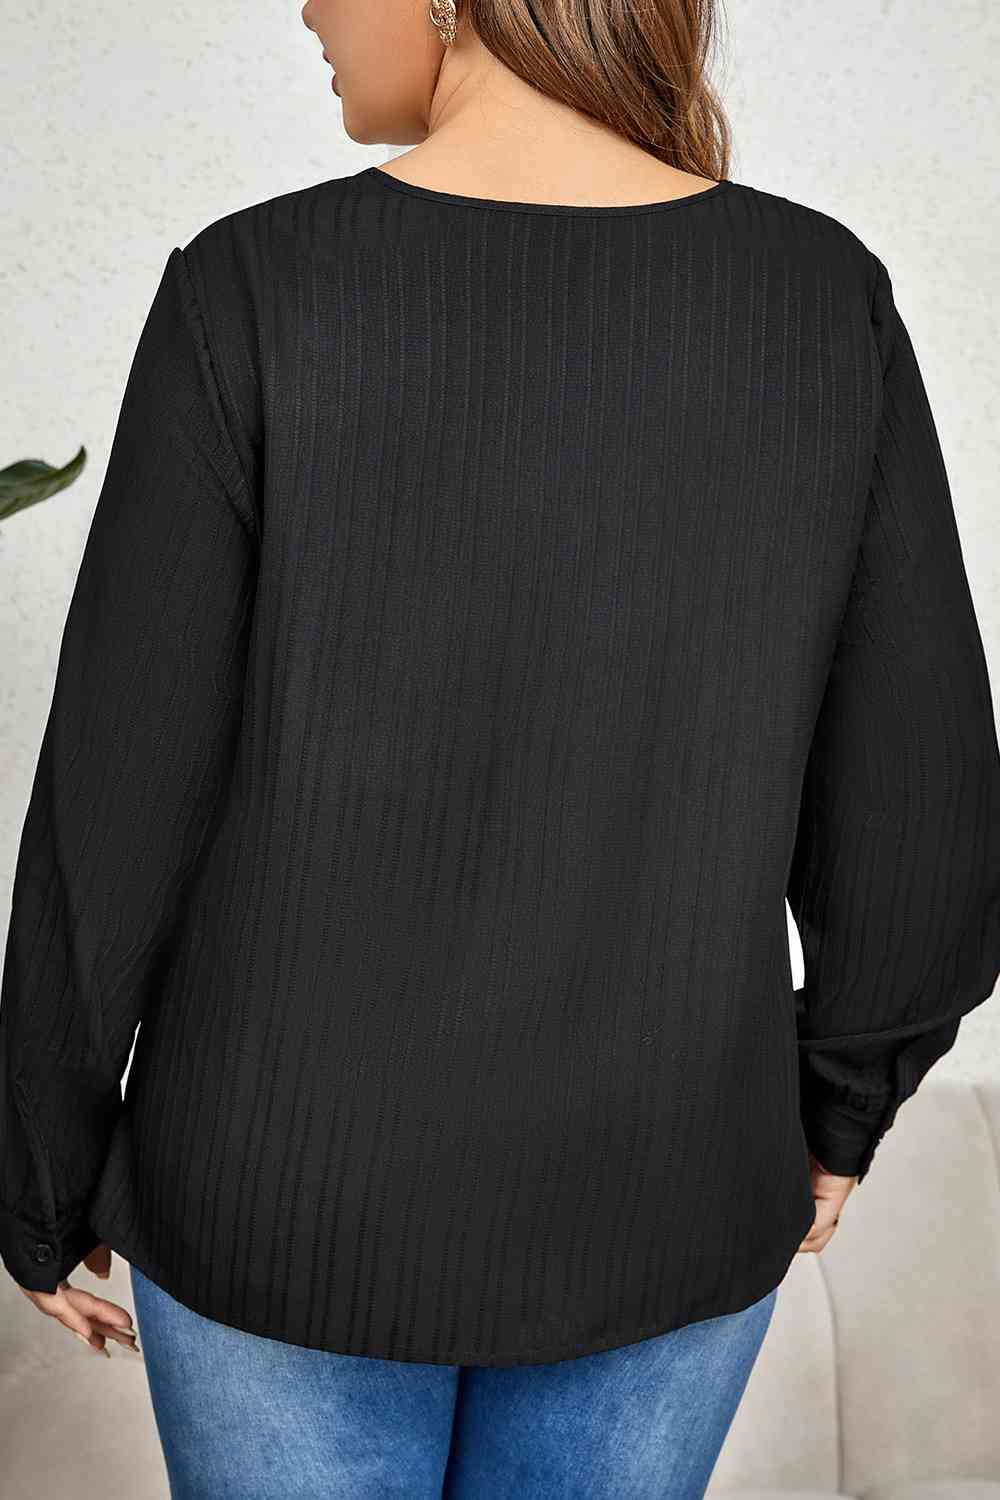 Plus Size Contrast Asymmetrical Long Sleeve Top  Krazy Heart Designs Boutique   